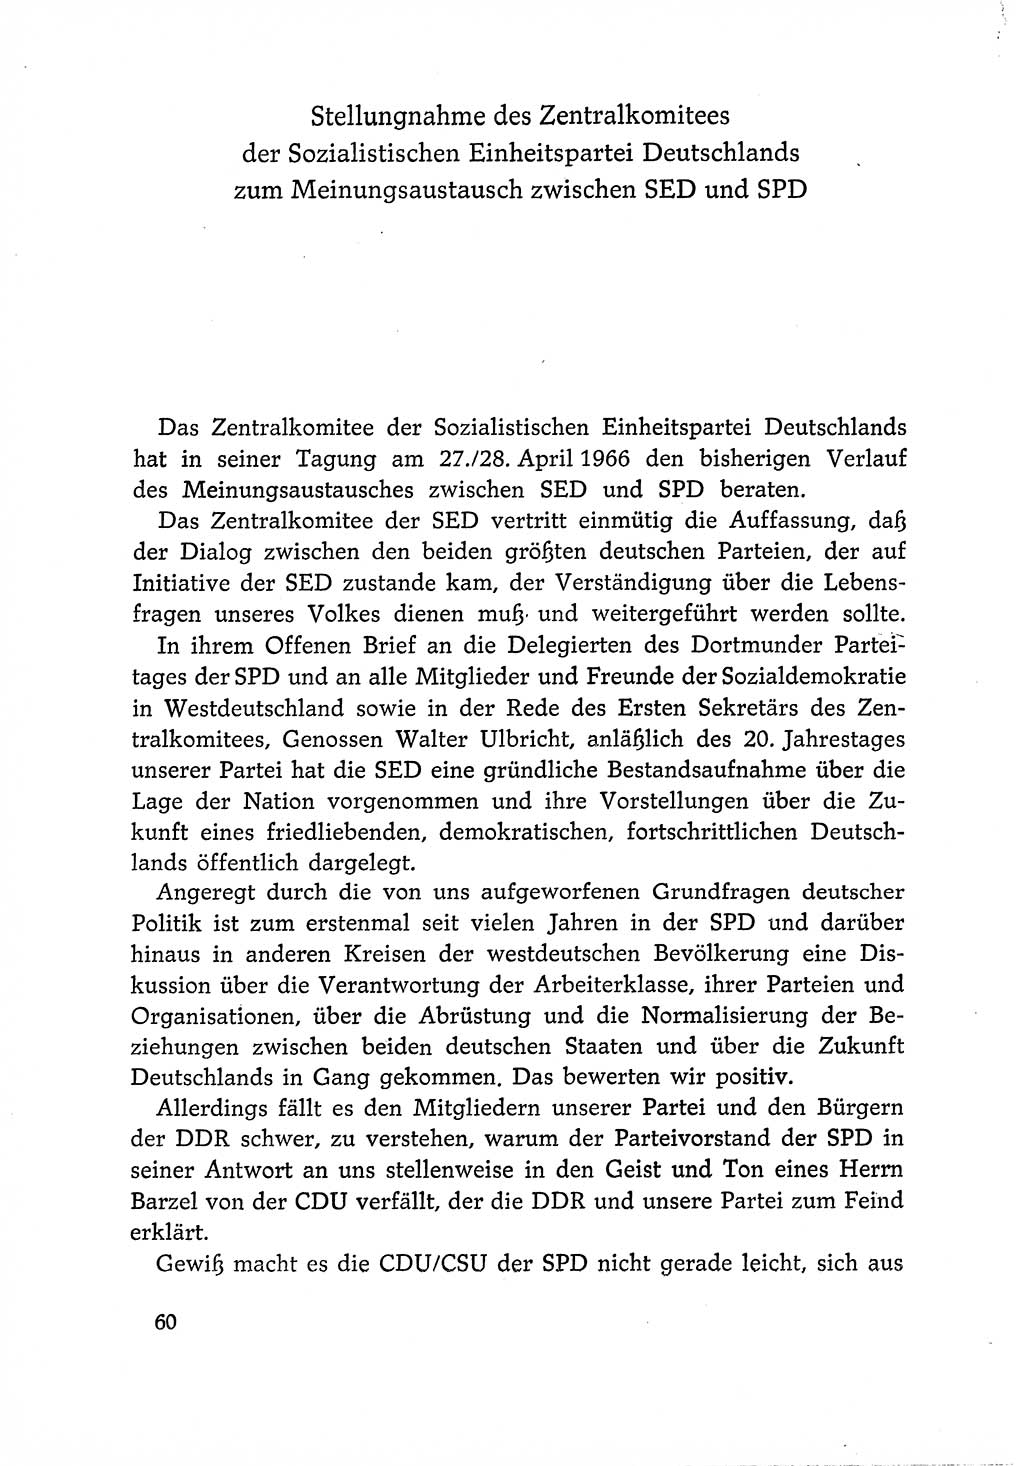 Dokumente der Sozialistischen Einheitspartei Deutschlands (SED) [Deutsche Demokratische Republik (DDR)] 1966-1967, Seite 60 (Dok. SED DDR 1966-1967, S. 60)